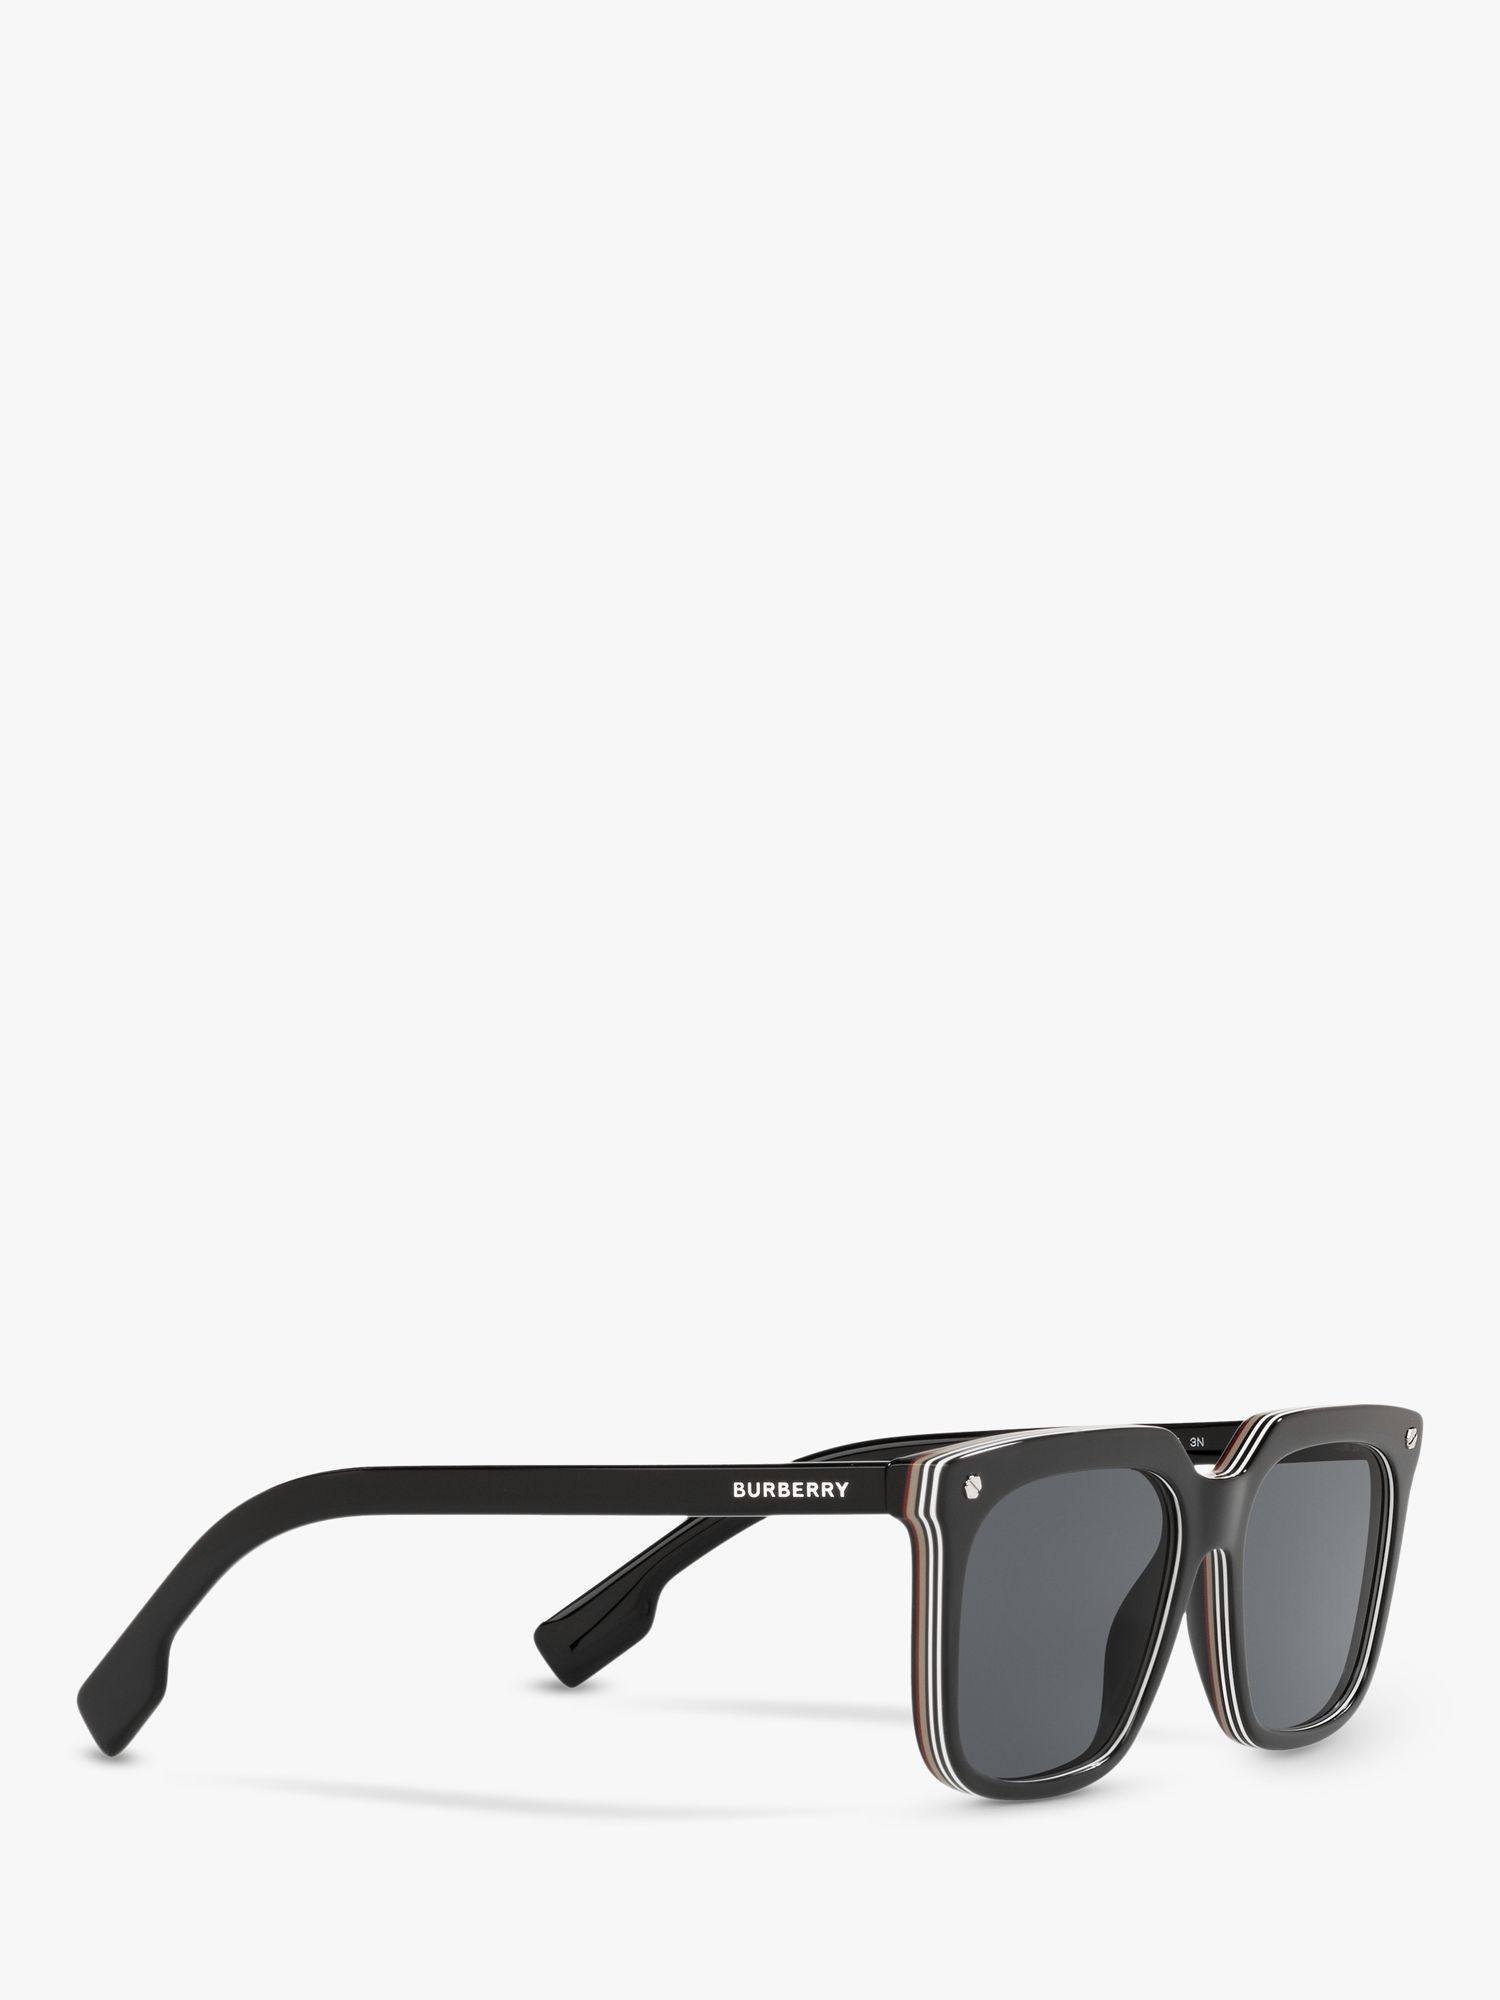 Burberry BE4337 Men's Square Sunglasses, Black at John Lewis & Partners